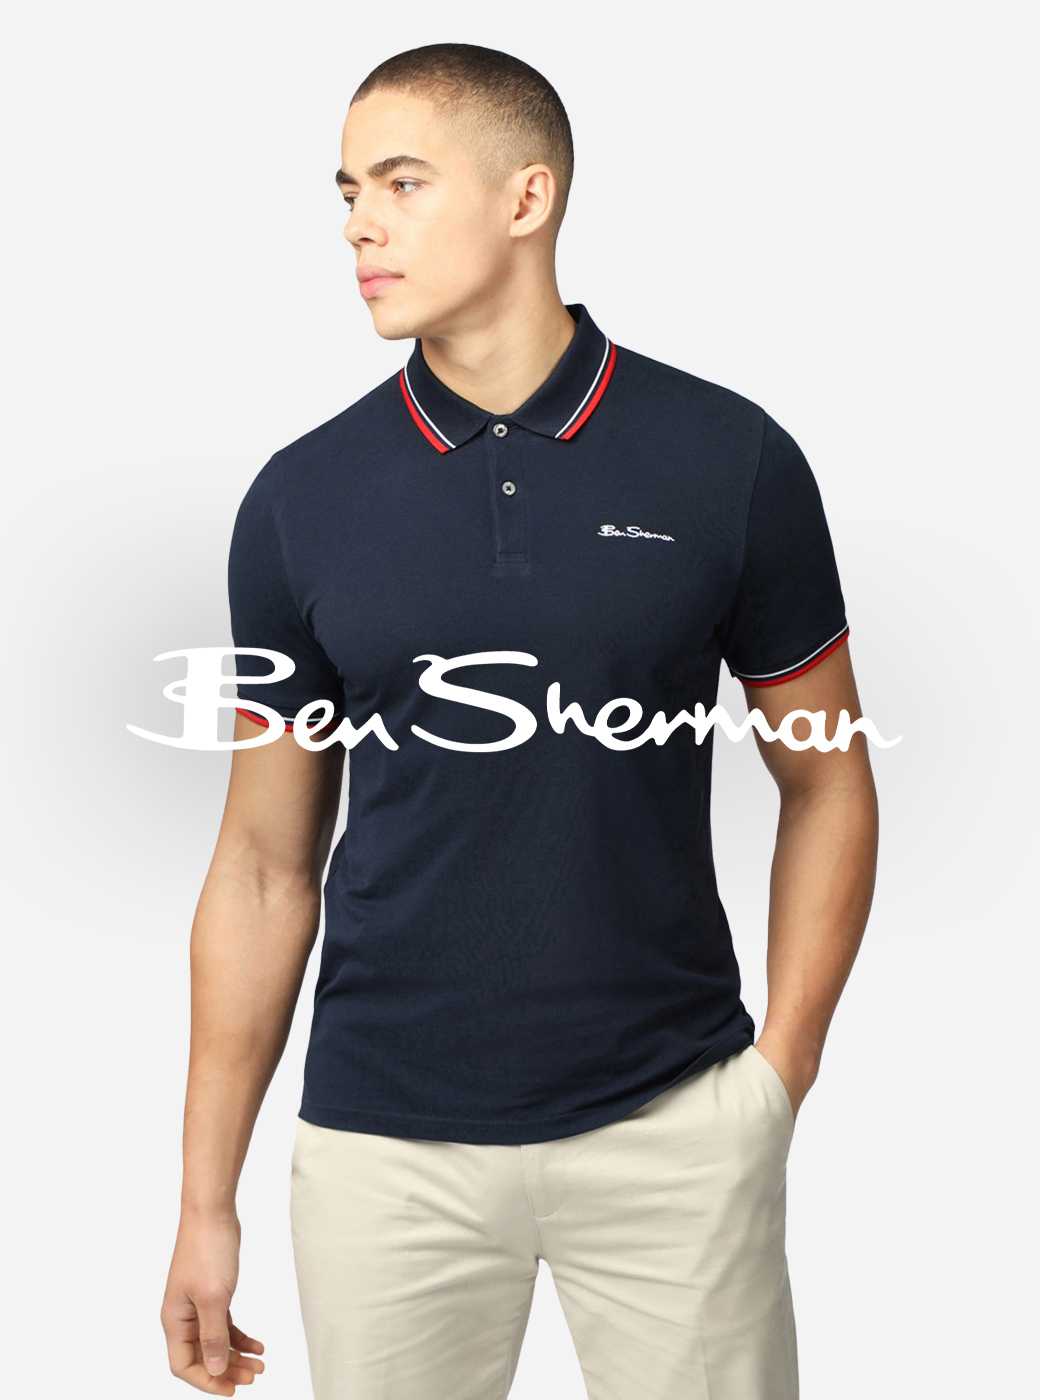 Shop Ben Sherman.